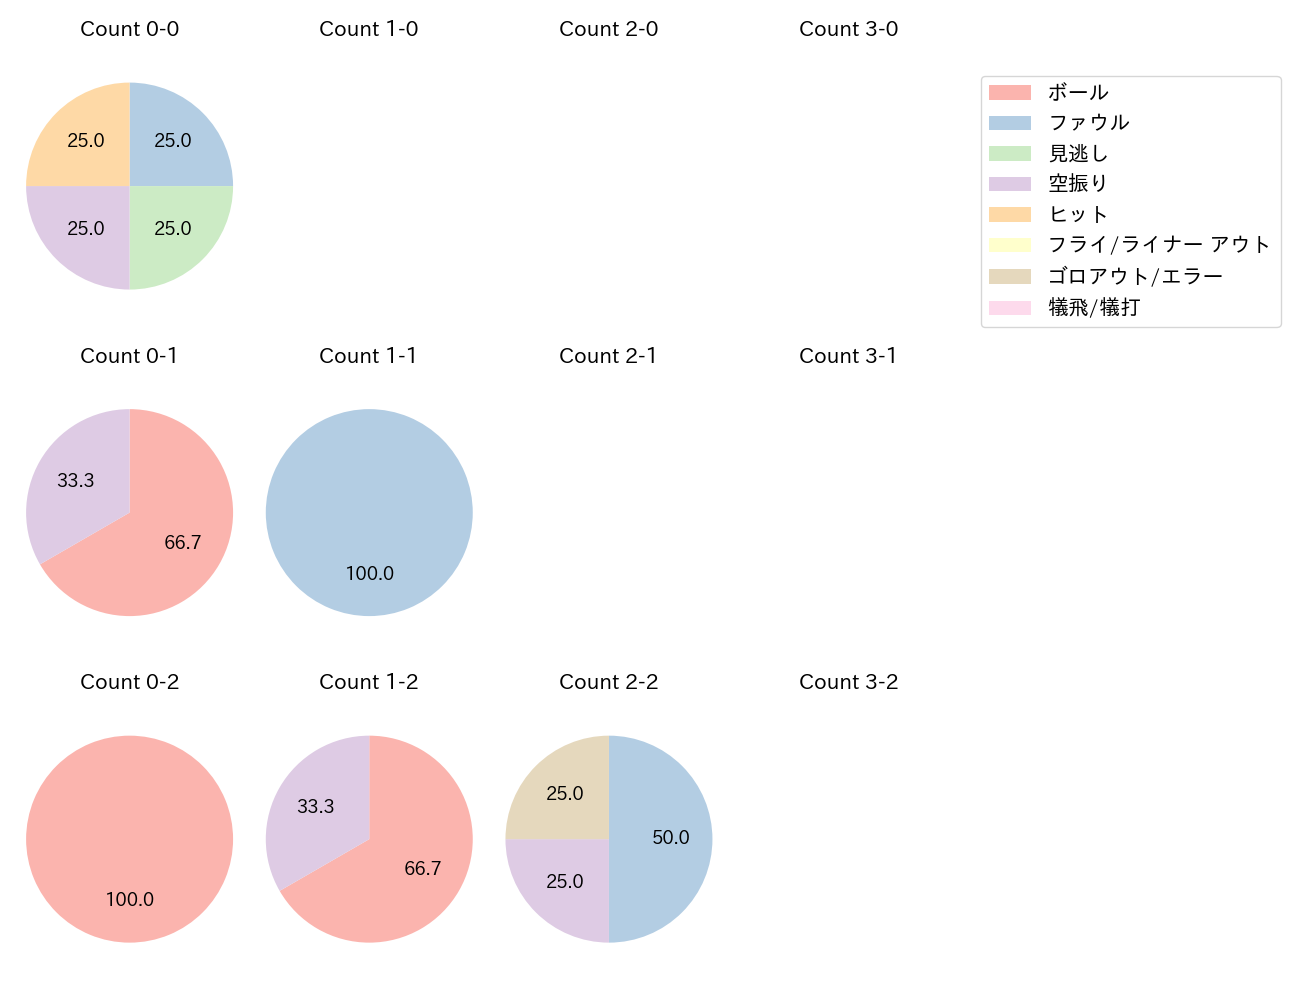 髙松 渡の球数分布(2022年6月)